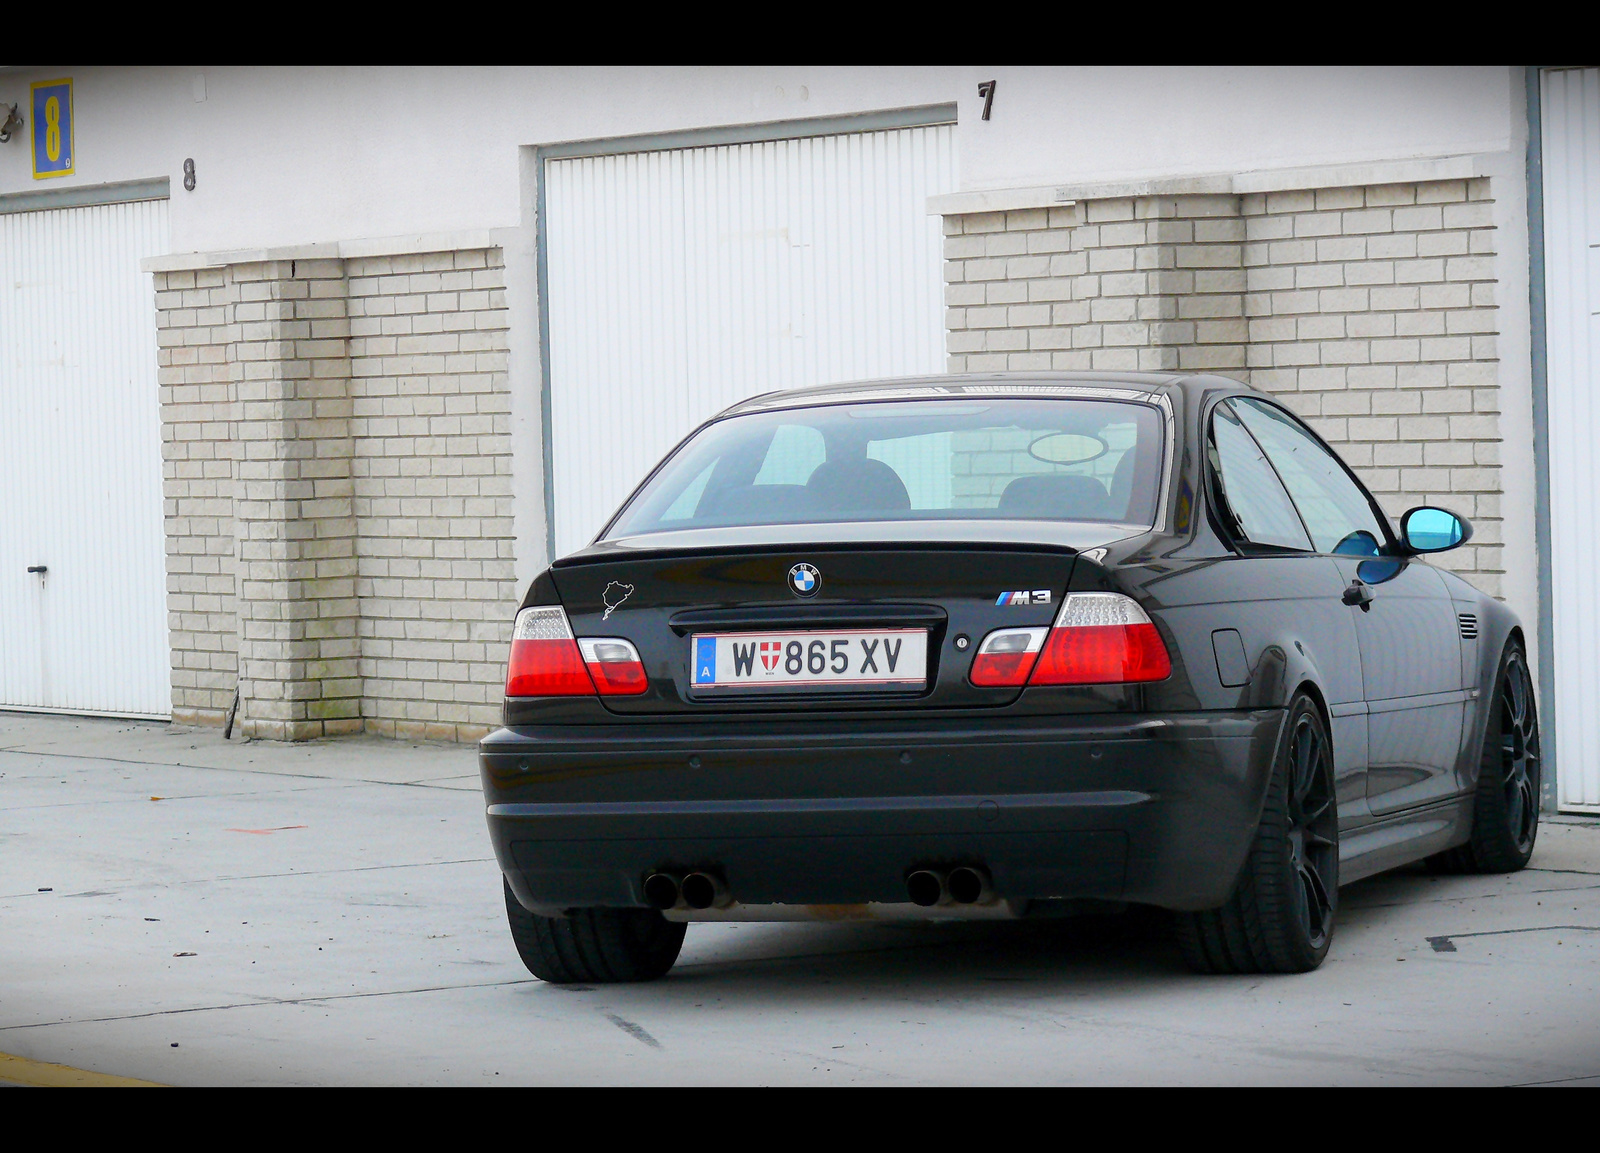 BMW M3 (e46)